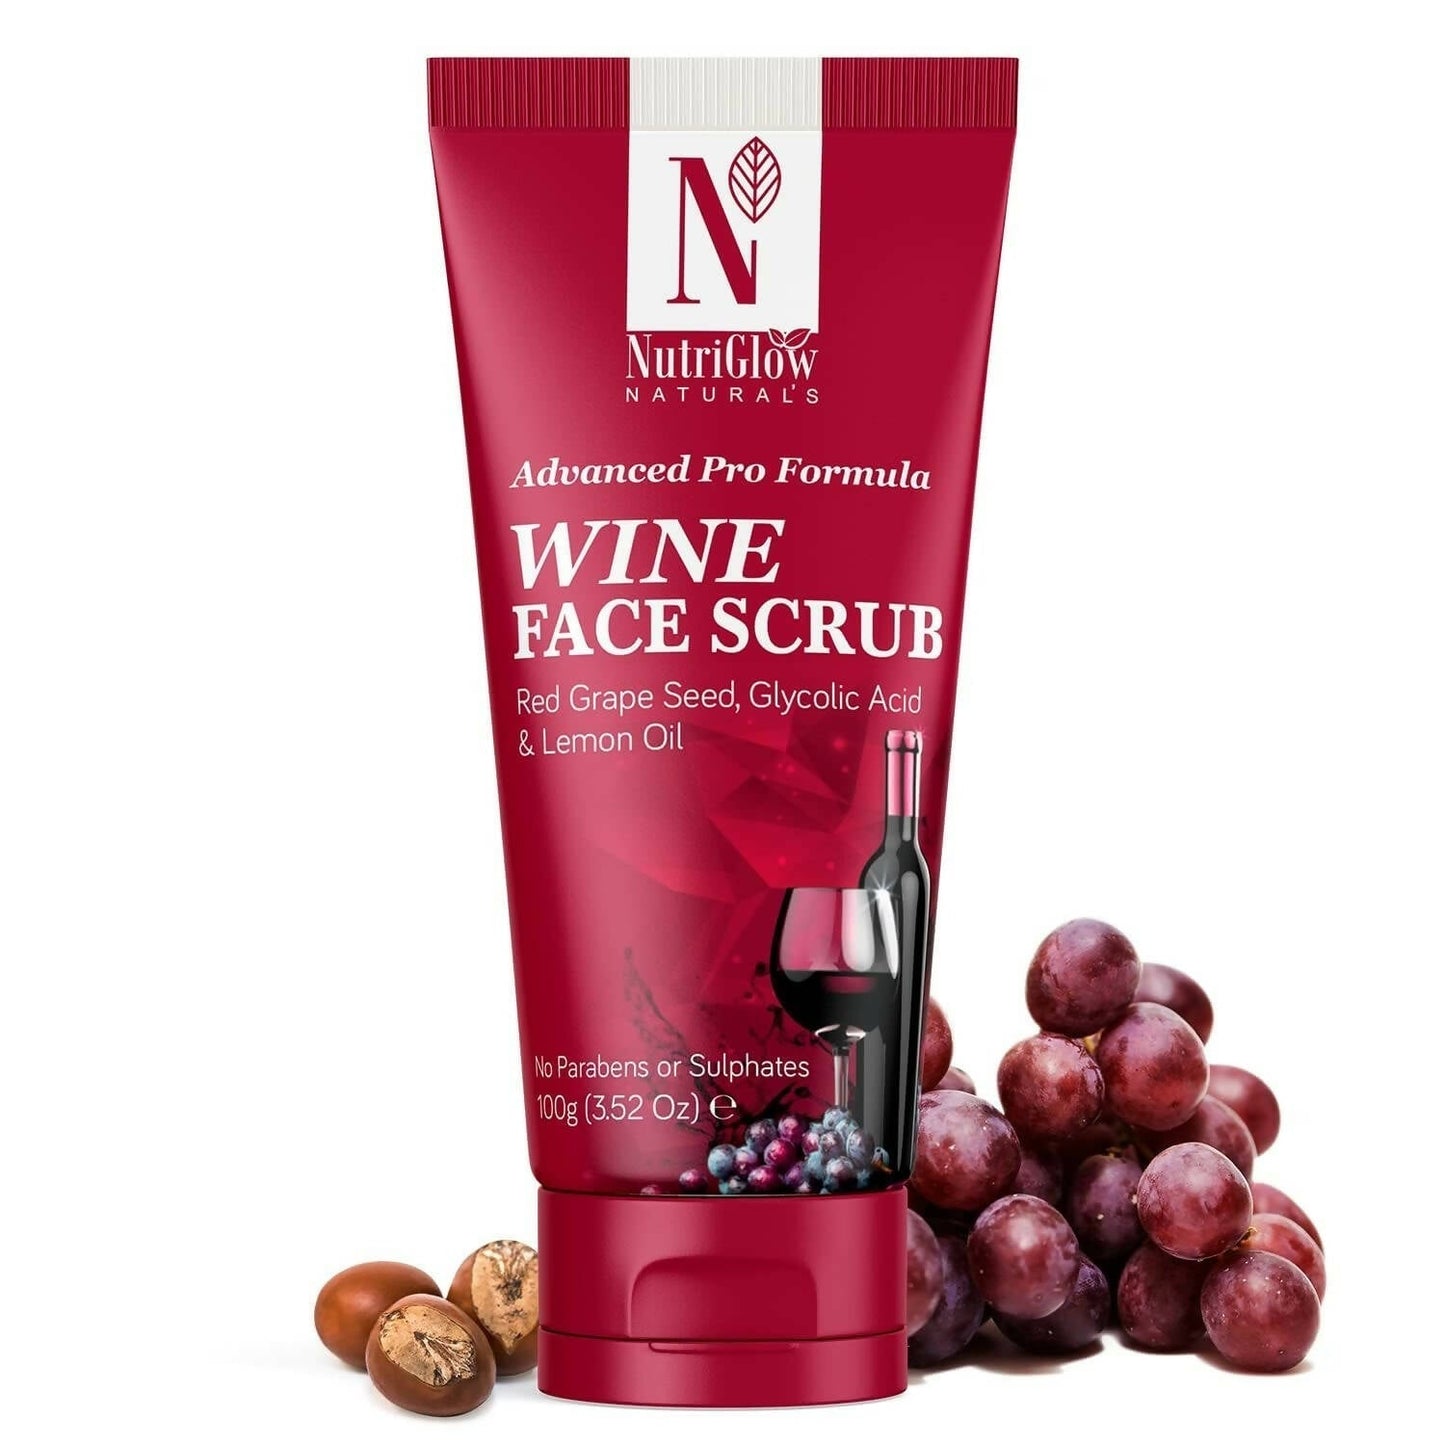 NutriGlow NATURAL'S Advanced Pro Formula Wine Face Scrub - BUDNEN